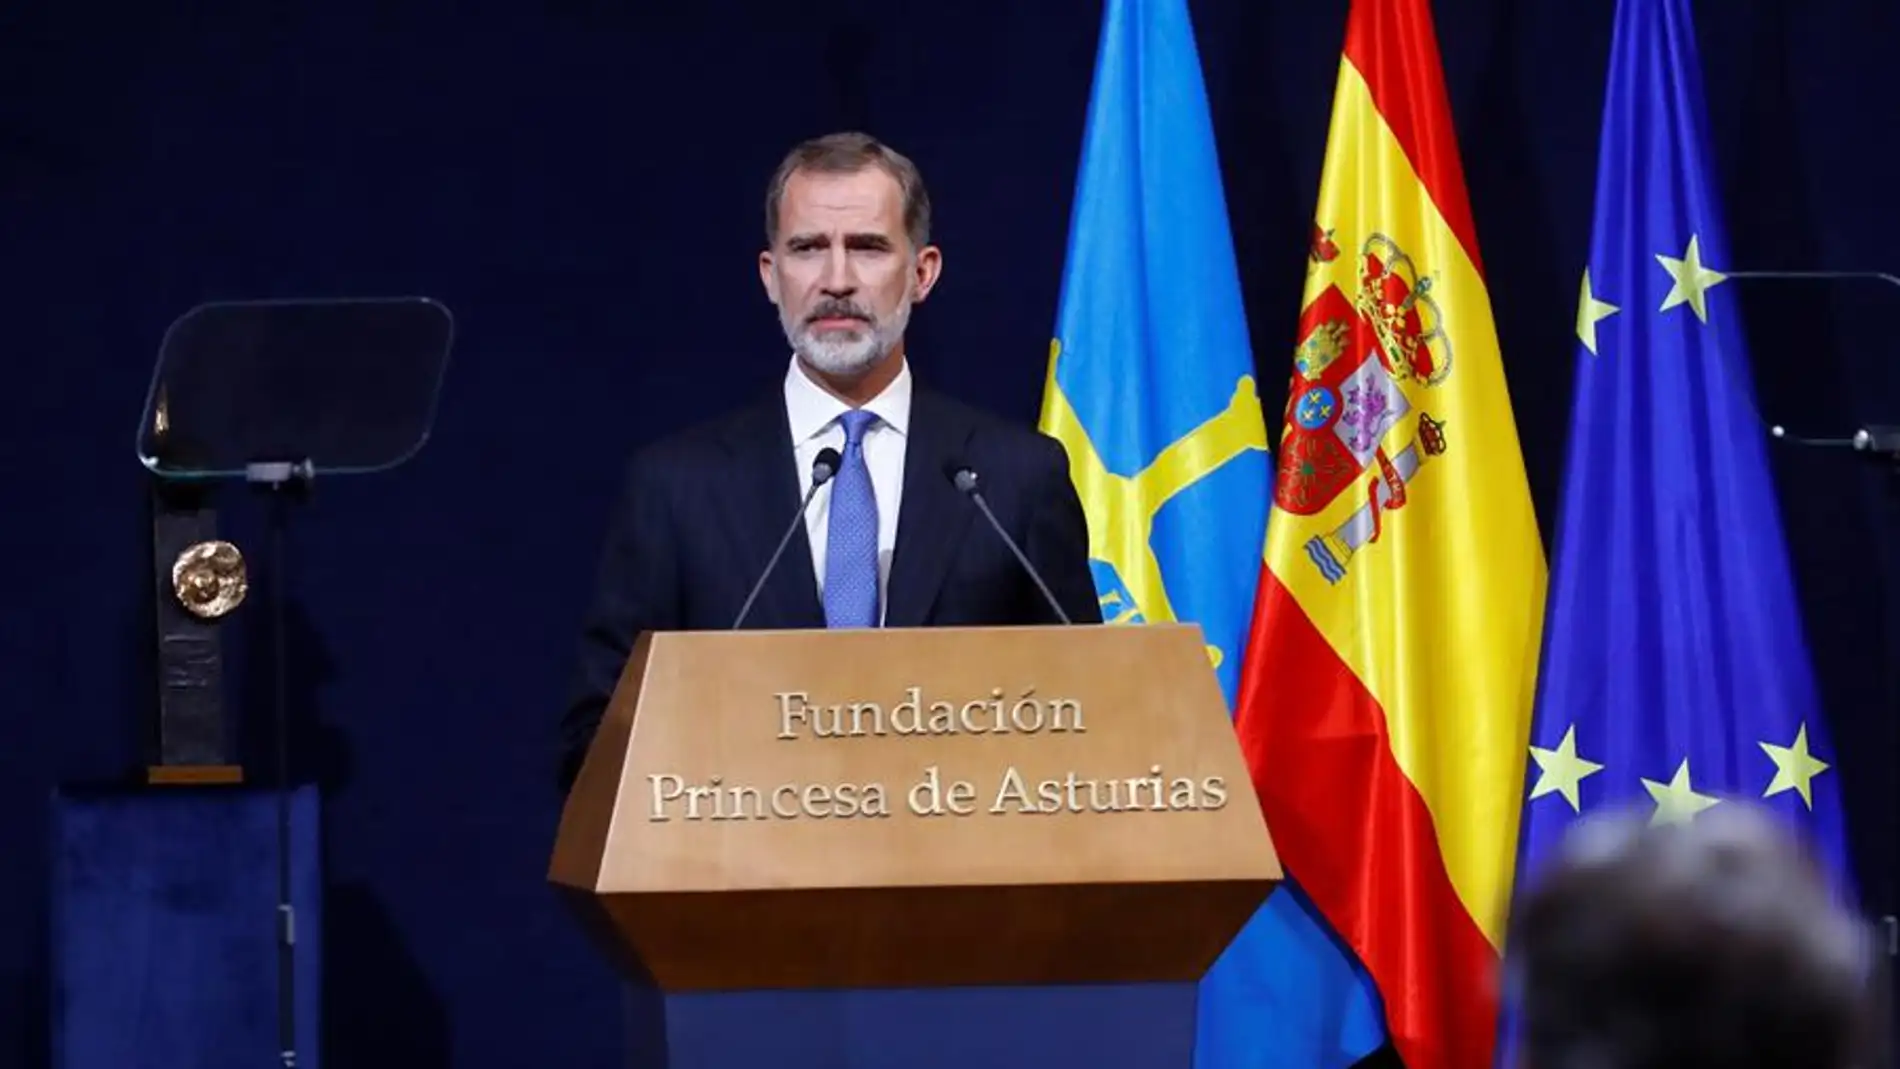 El rey Felipe VI pronuncia su discurso en la ceremonia de los Princesa de Asturias.